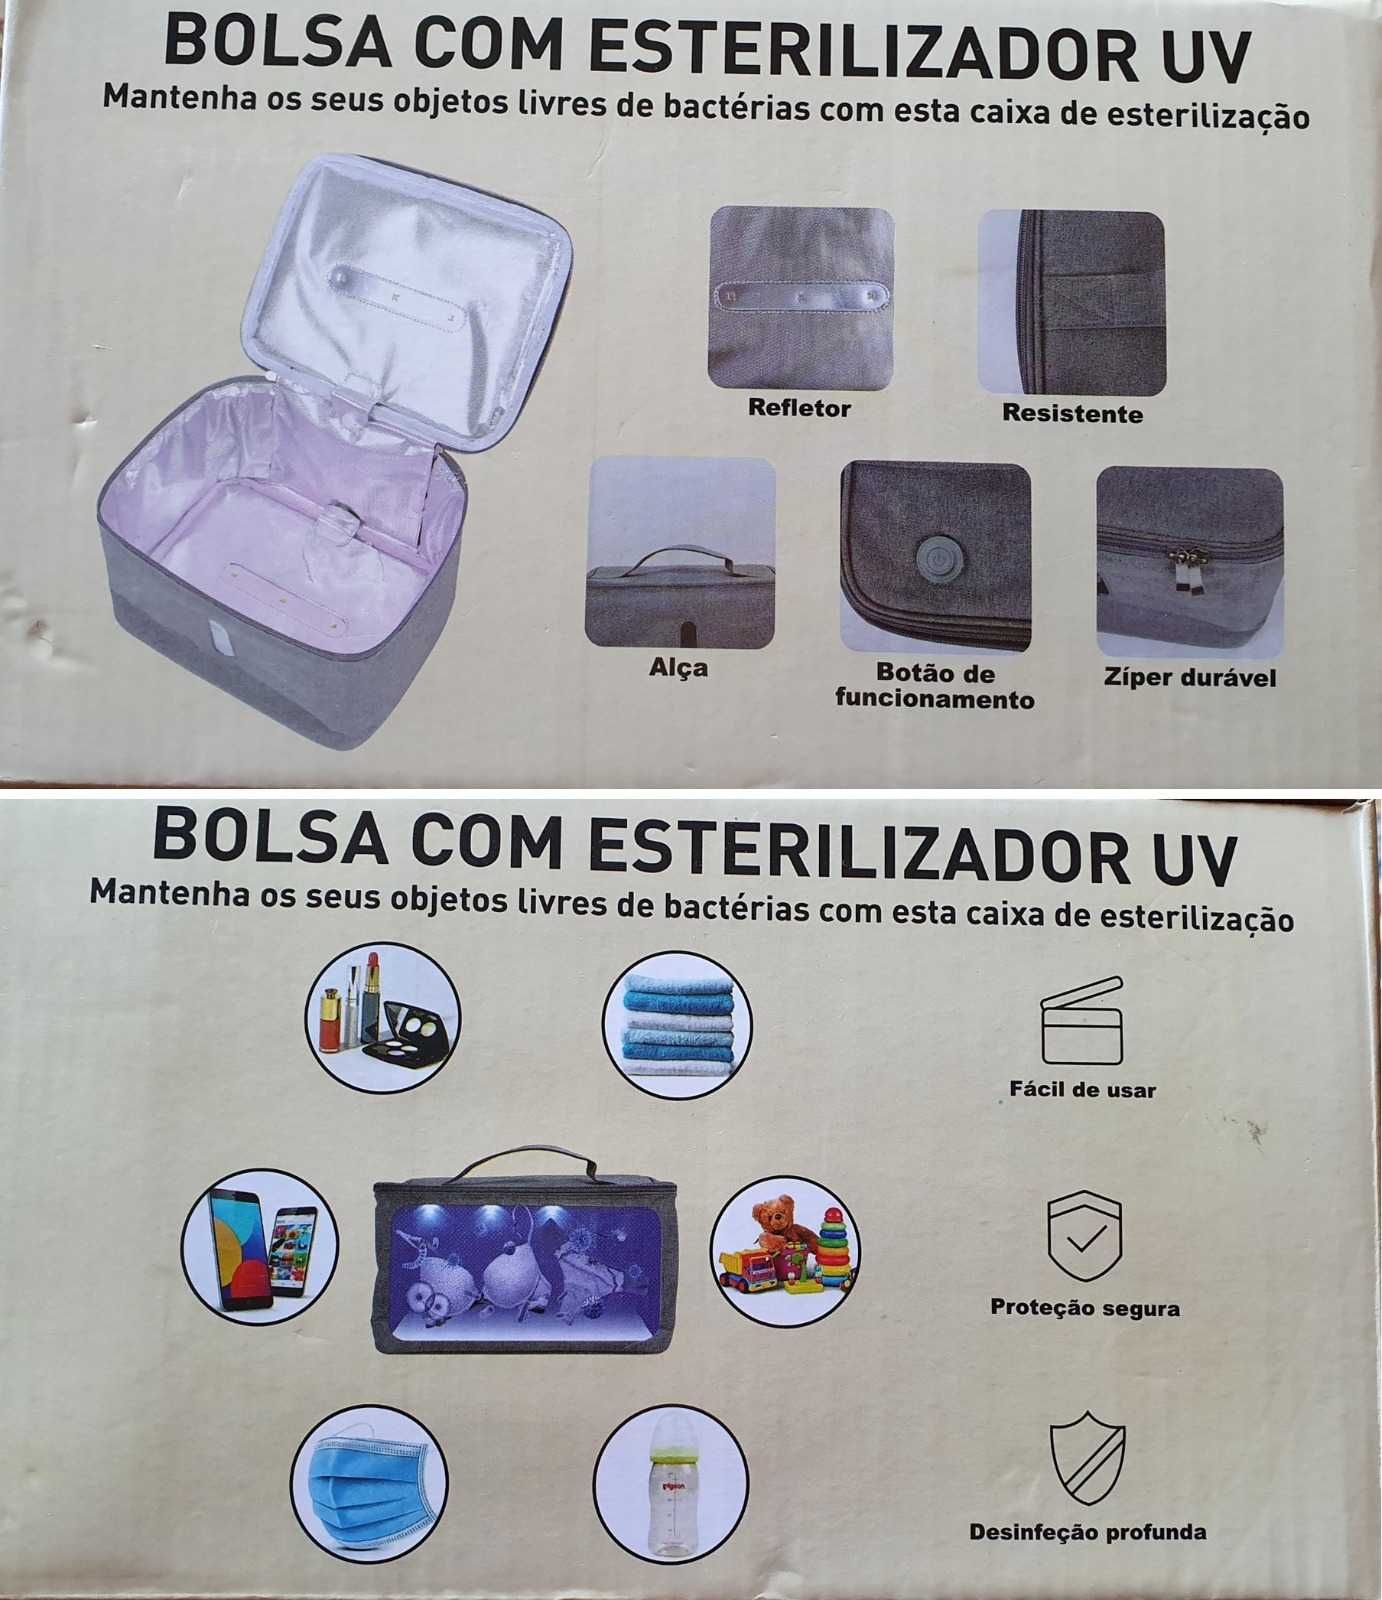 Bolsa com esterilizador UV (ultra violeta)